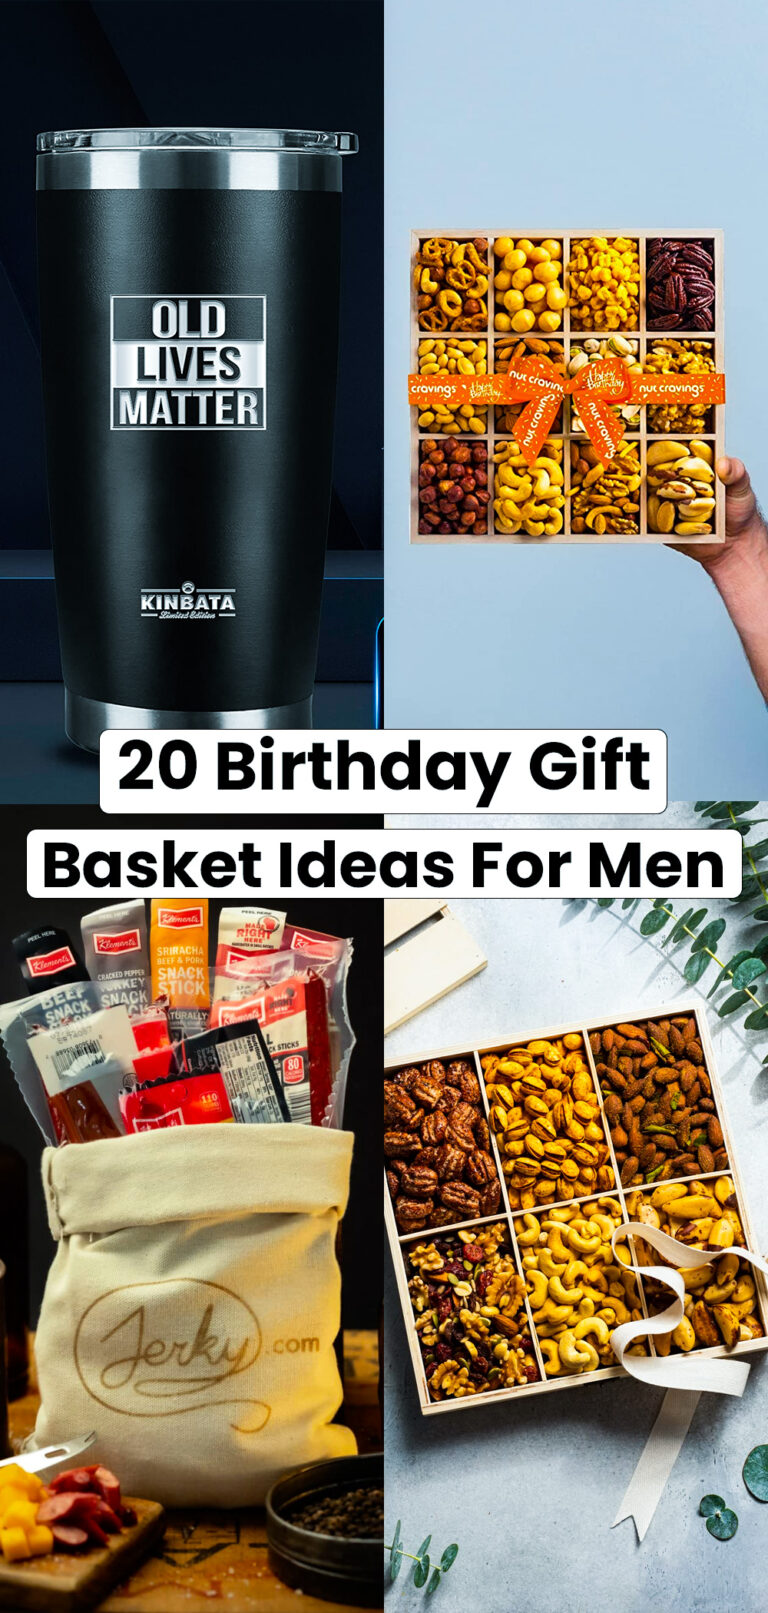 17 Birthday Gift Basket Ideas for Men